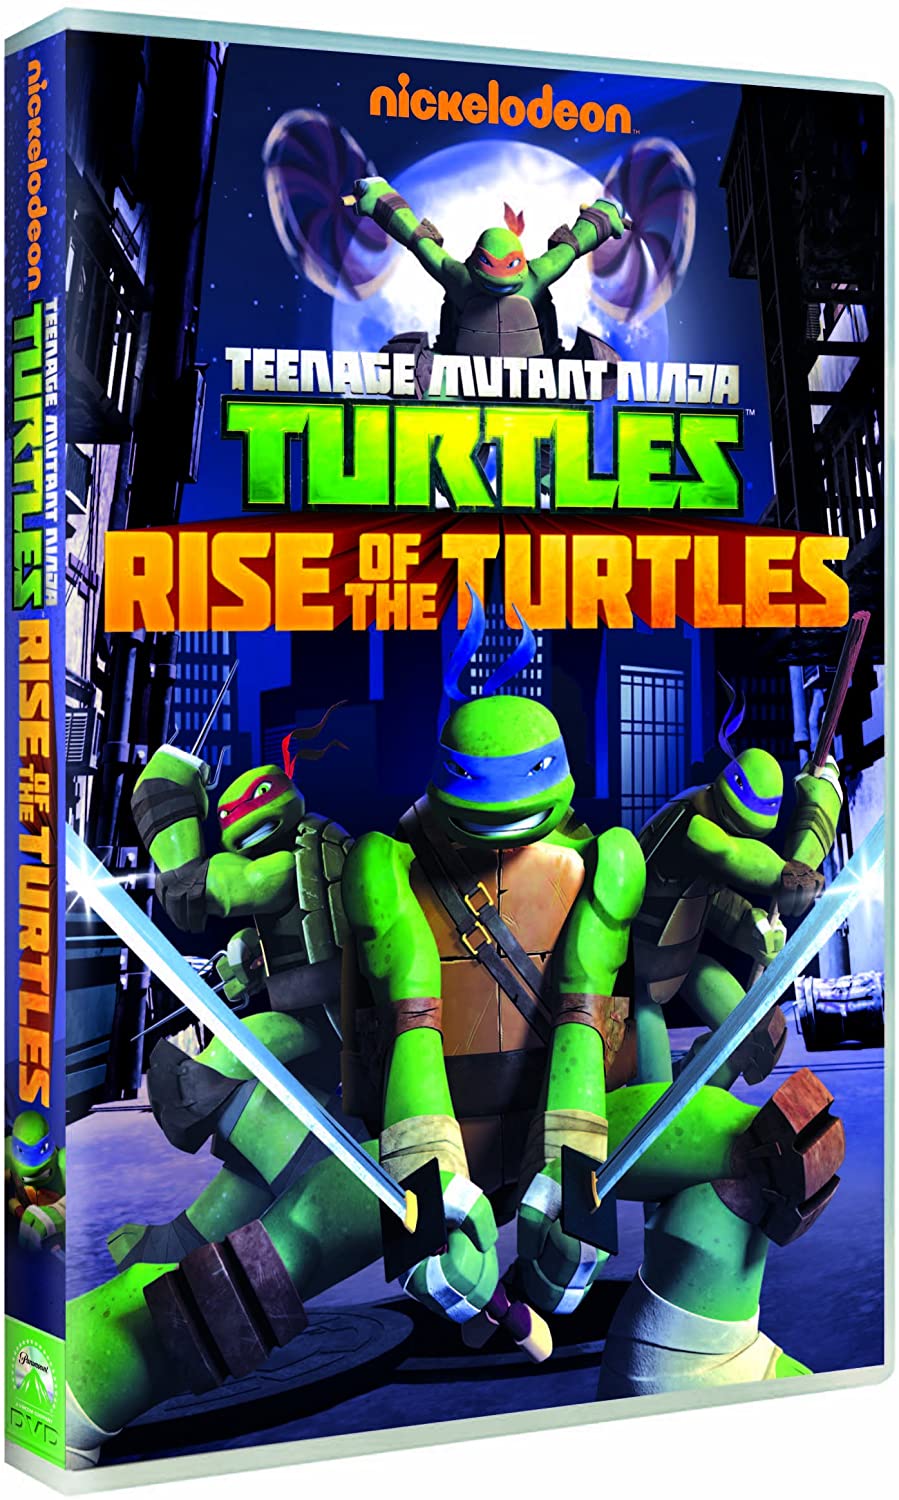 Teenage Mutant Ninja Turtles: Season One, Vol. 1 - Rise of the Turtles [2012] - Action/Adventure [DVD]